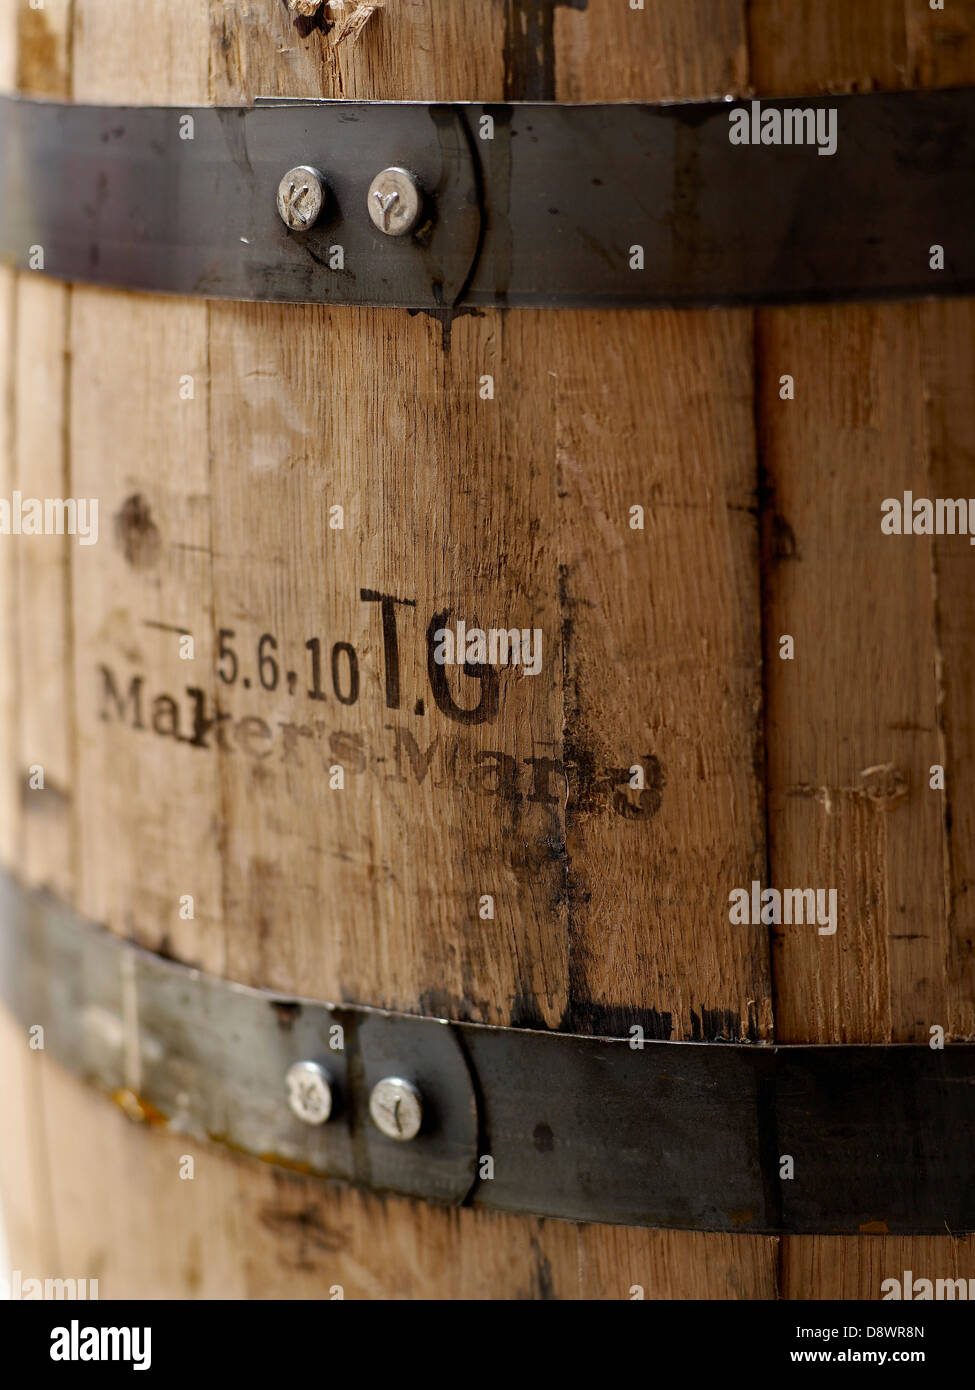 Maker's Mark wooden barrel of Bourbon Stock Photo